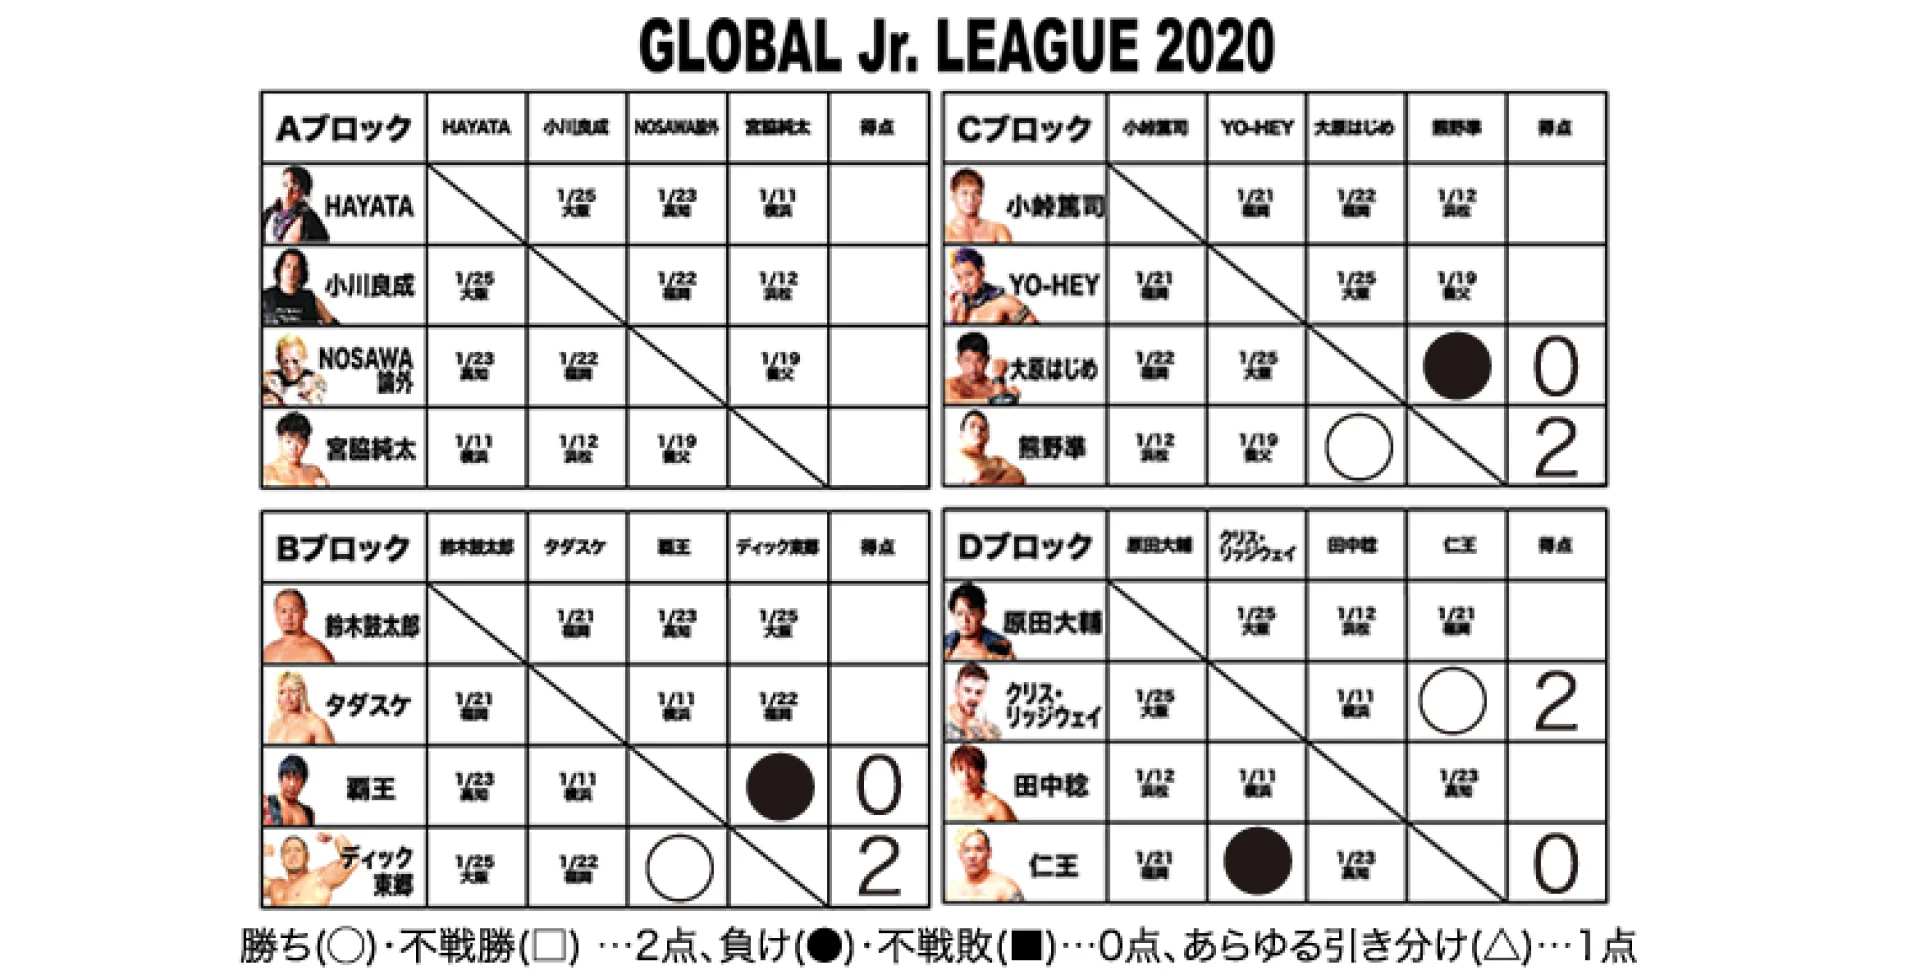 【1･10横浜大会終了時点】GLOBAL Jr. LEAGUE 2020 得点表